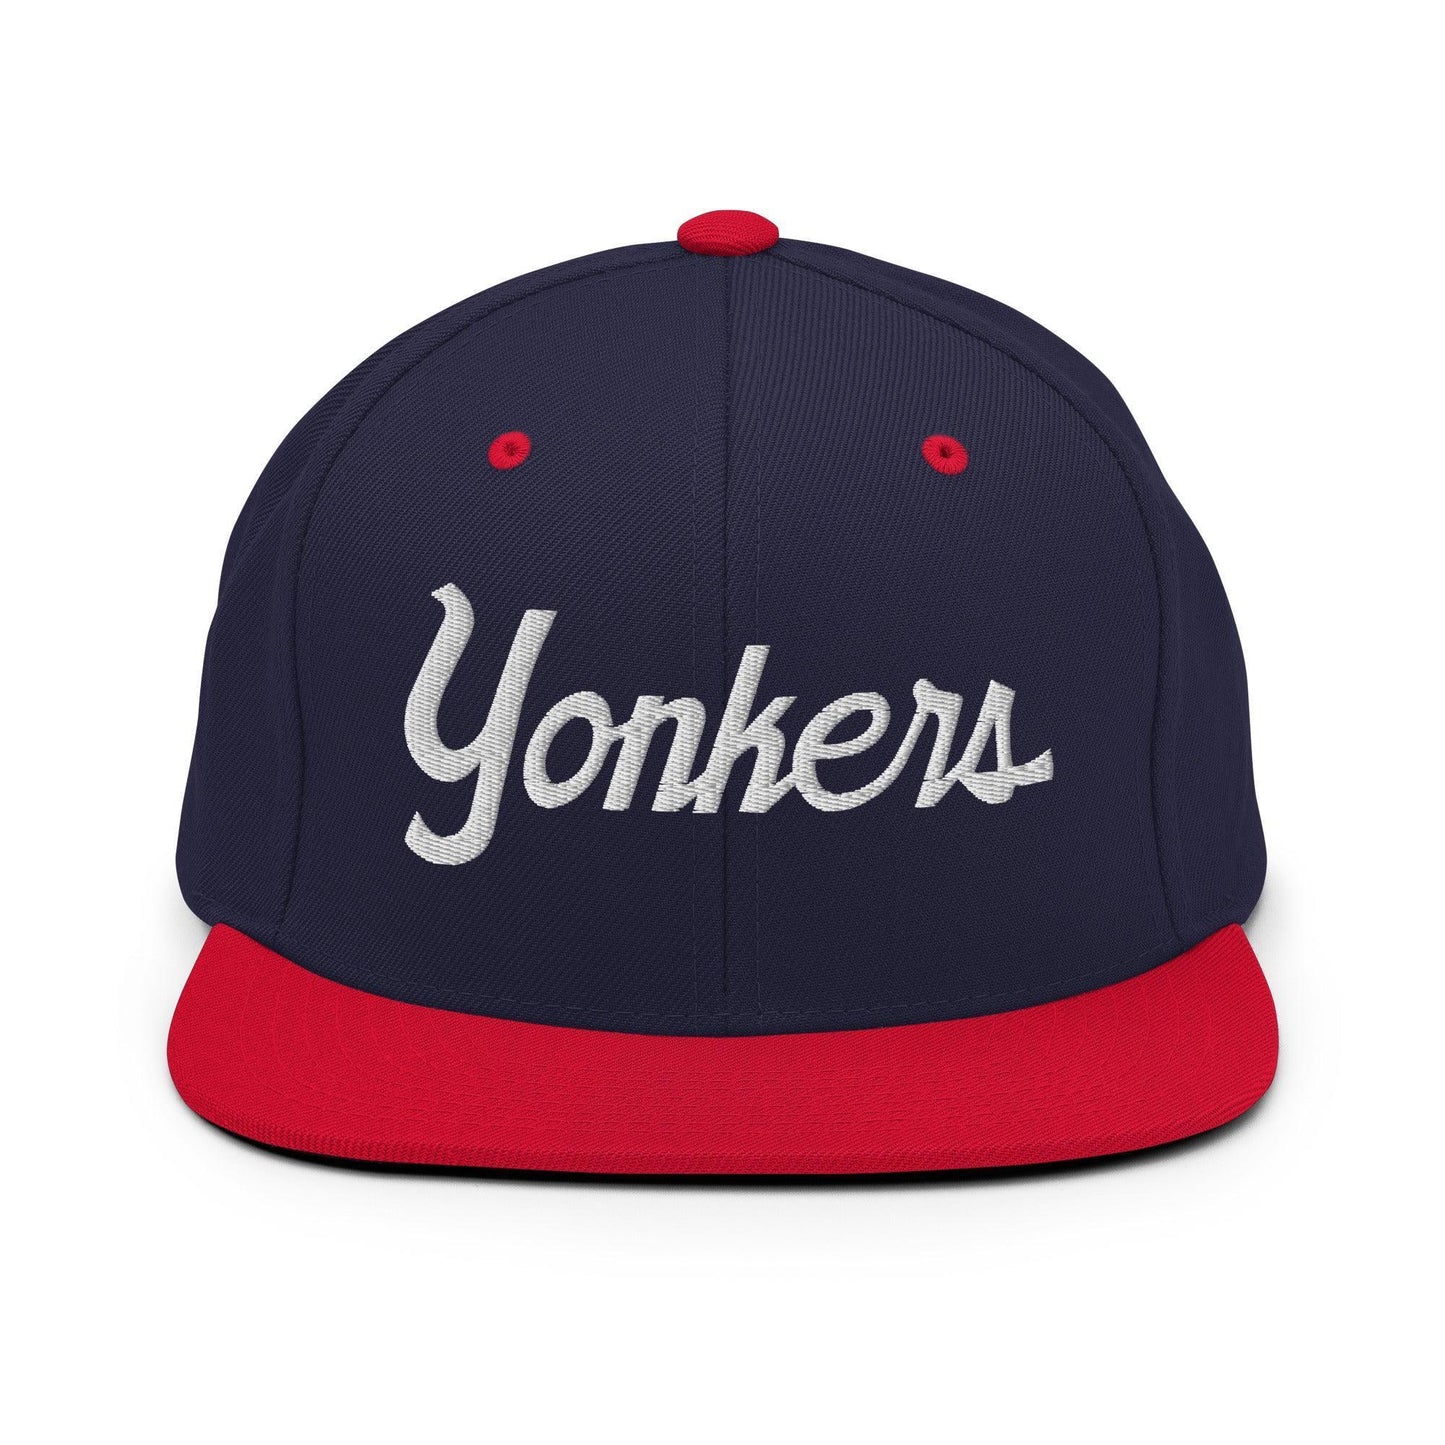 Yonkers Script Snapback Hat Navy Red